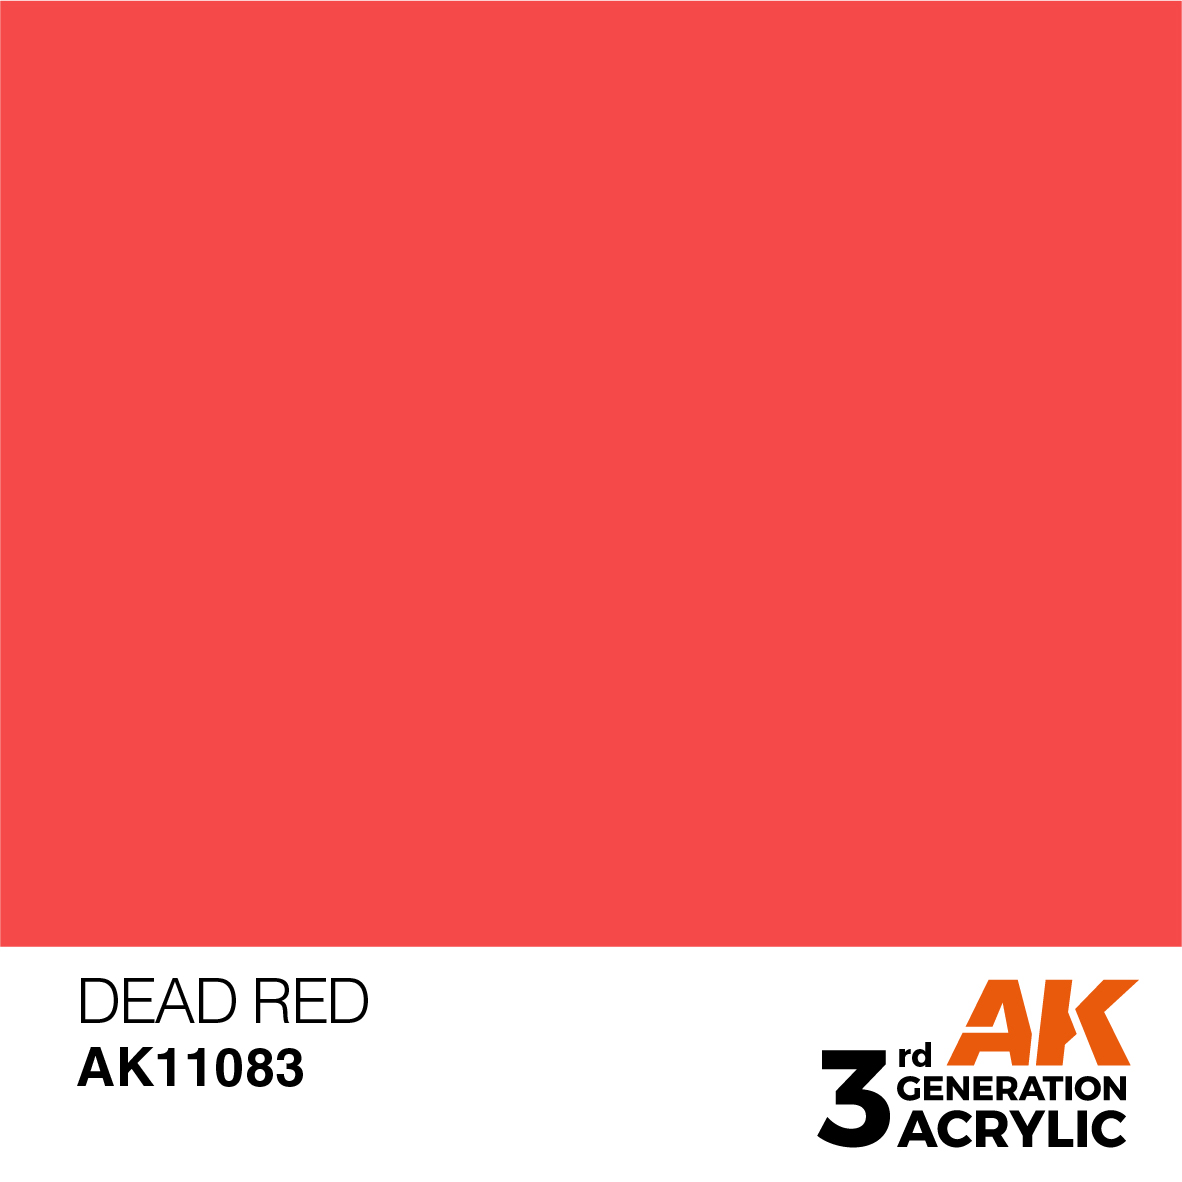 DEAD RED – STANDARD